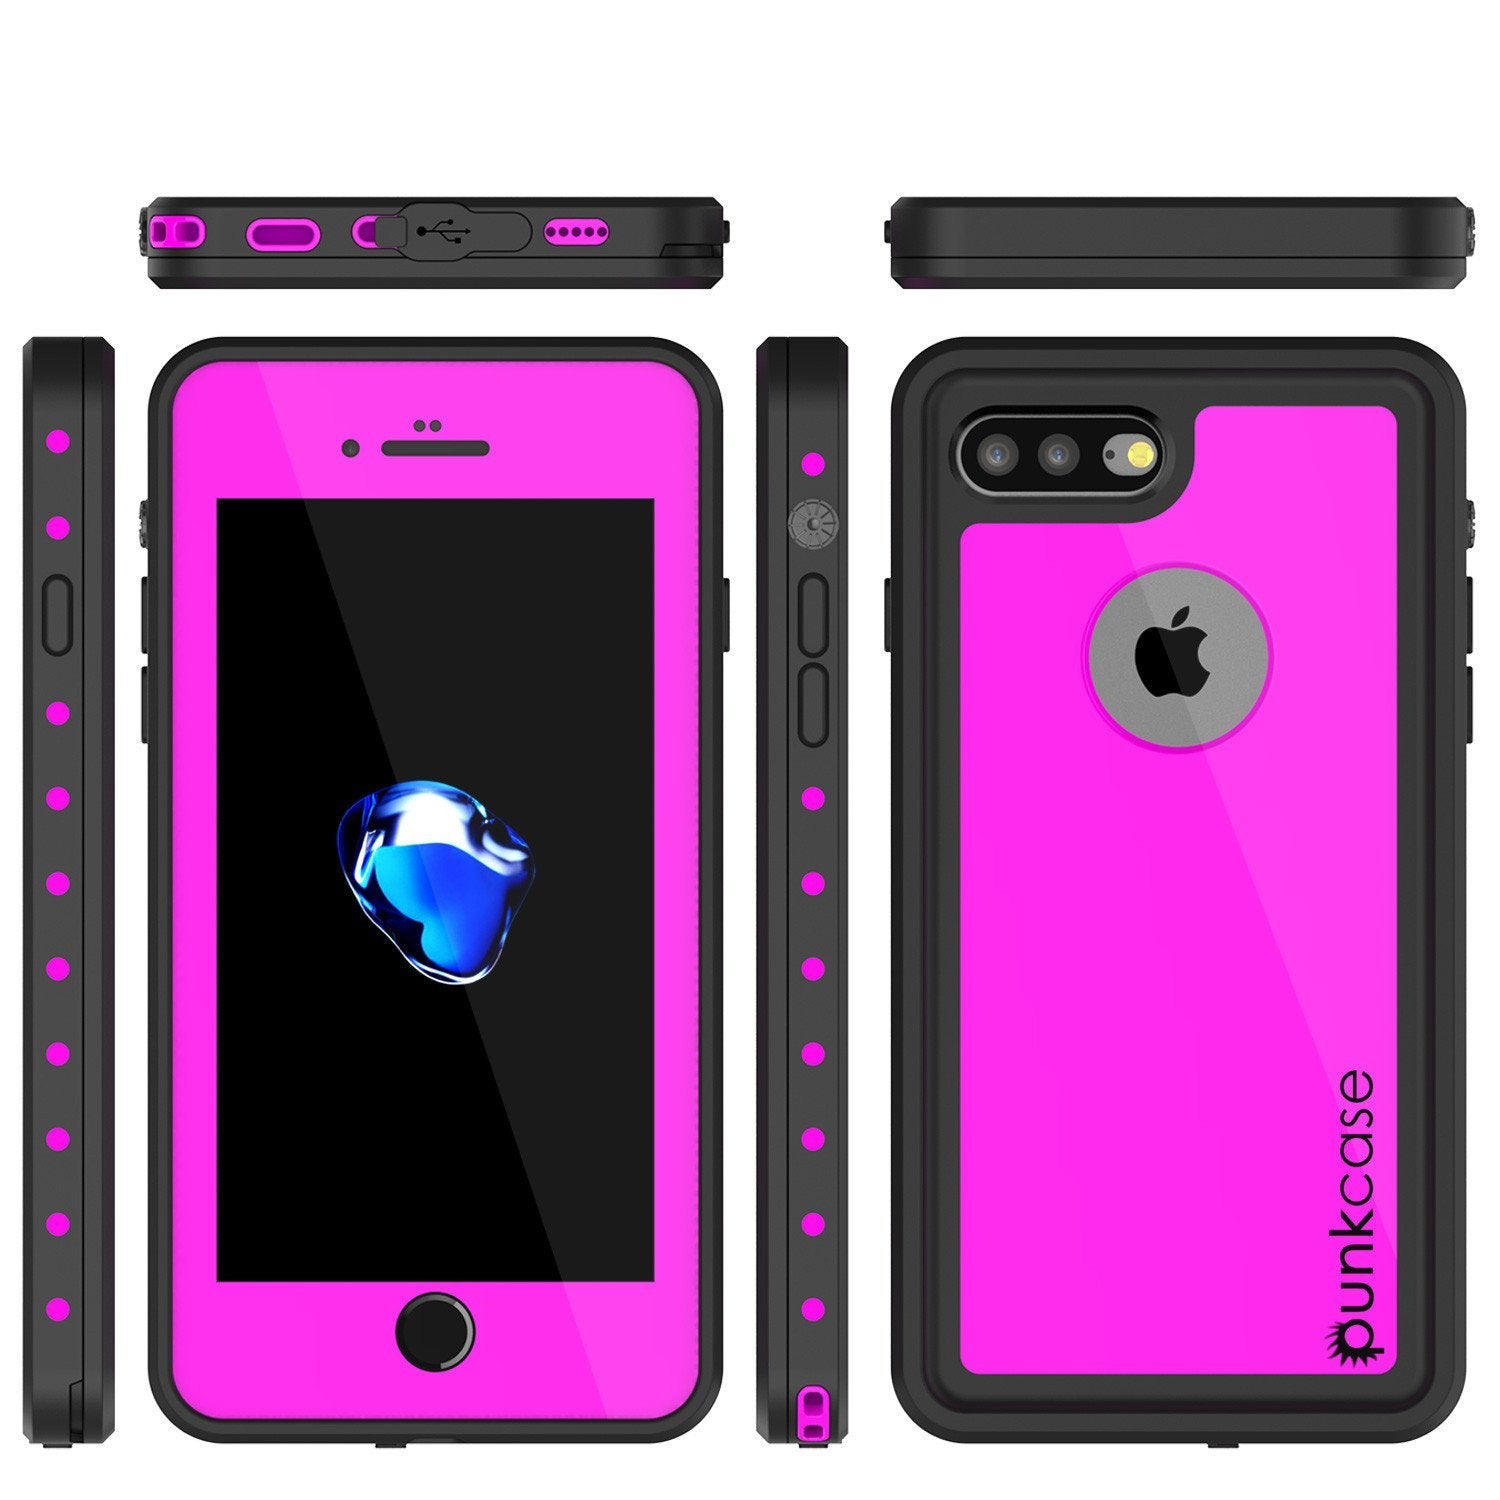 iPhone 8+ Plus Waterproof Case, Punkcase [StudStar] [Pink] [Slim Fit] [IP68 Certified] [Shockproof] [Dirtproof] [Snowproof] Armor Cover